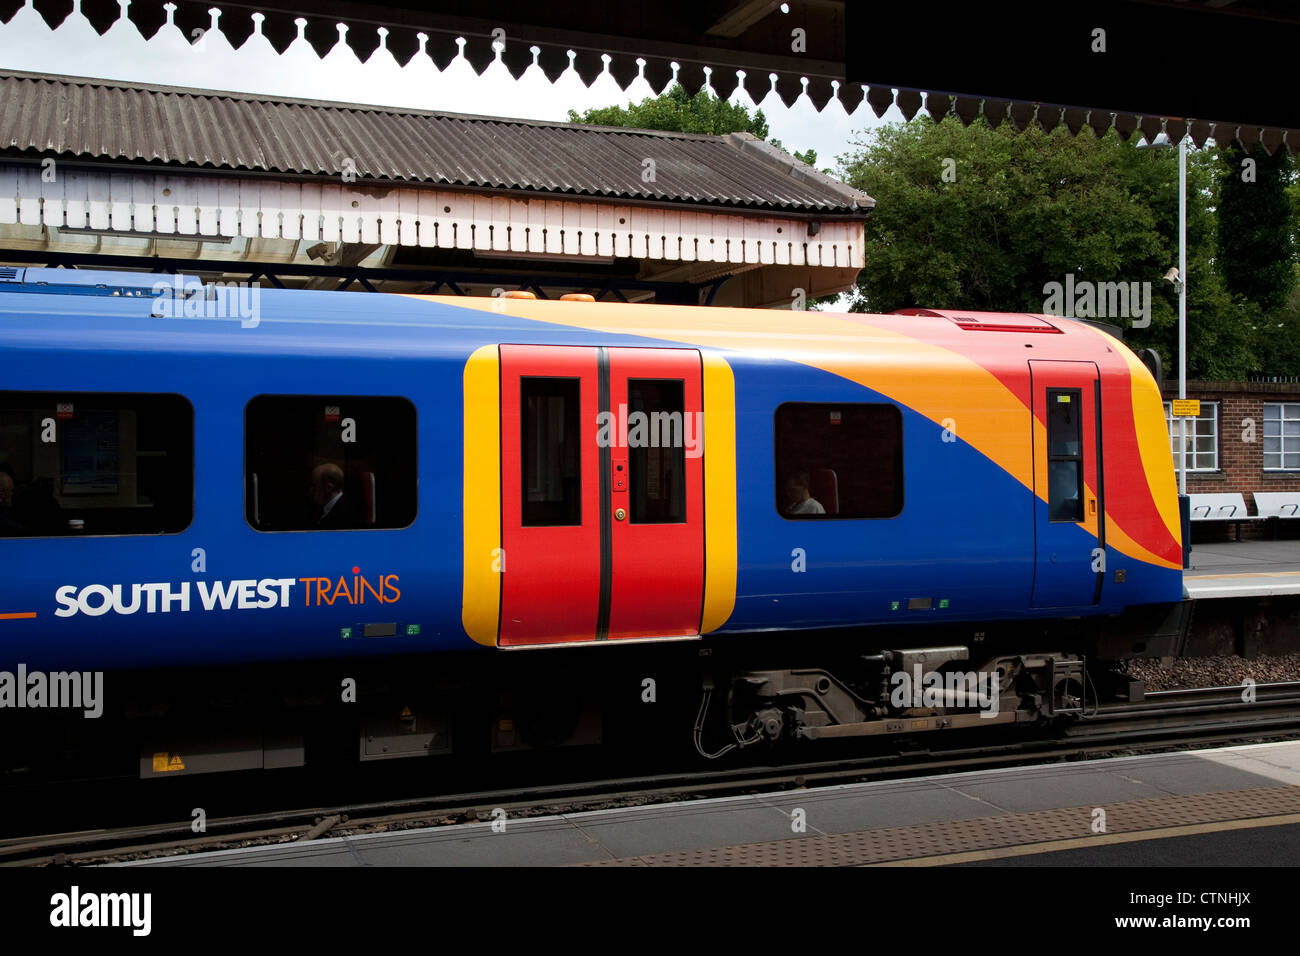 South West Train, Gare d'Alton, Hampshire, England, UK Banque D'Images